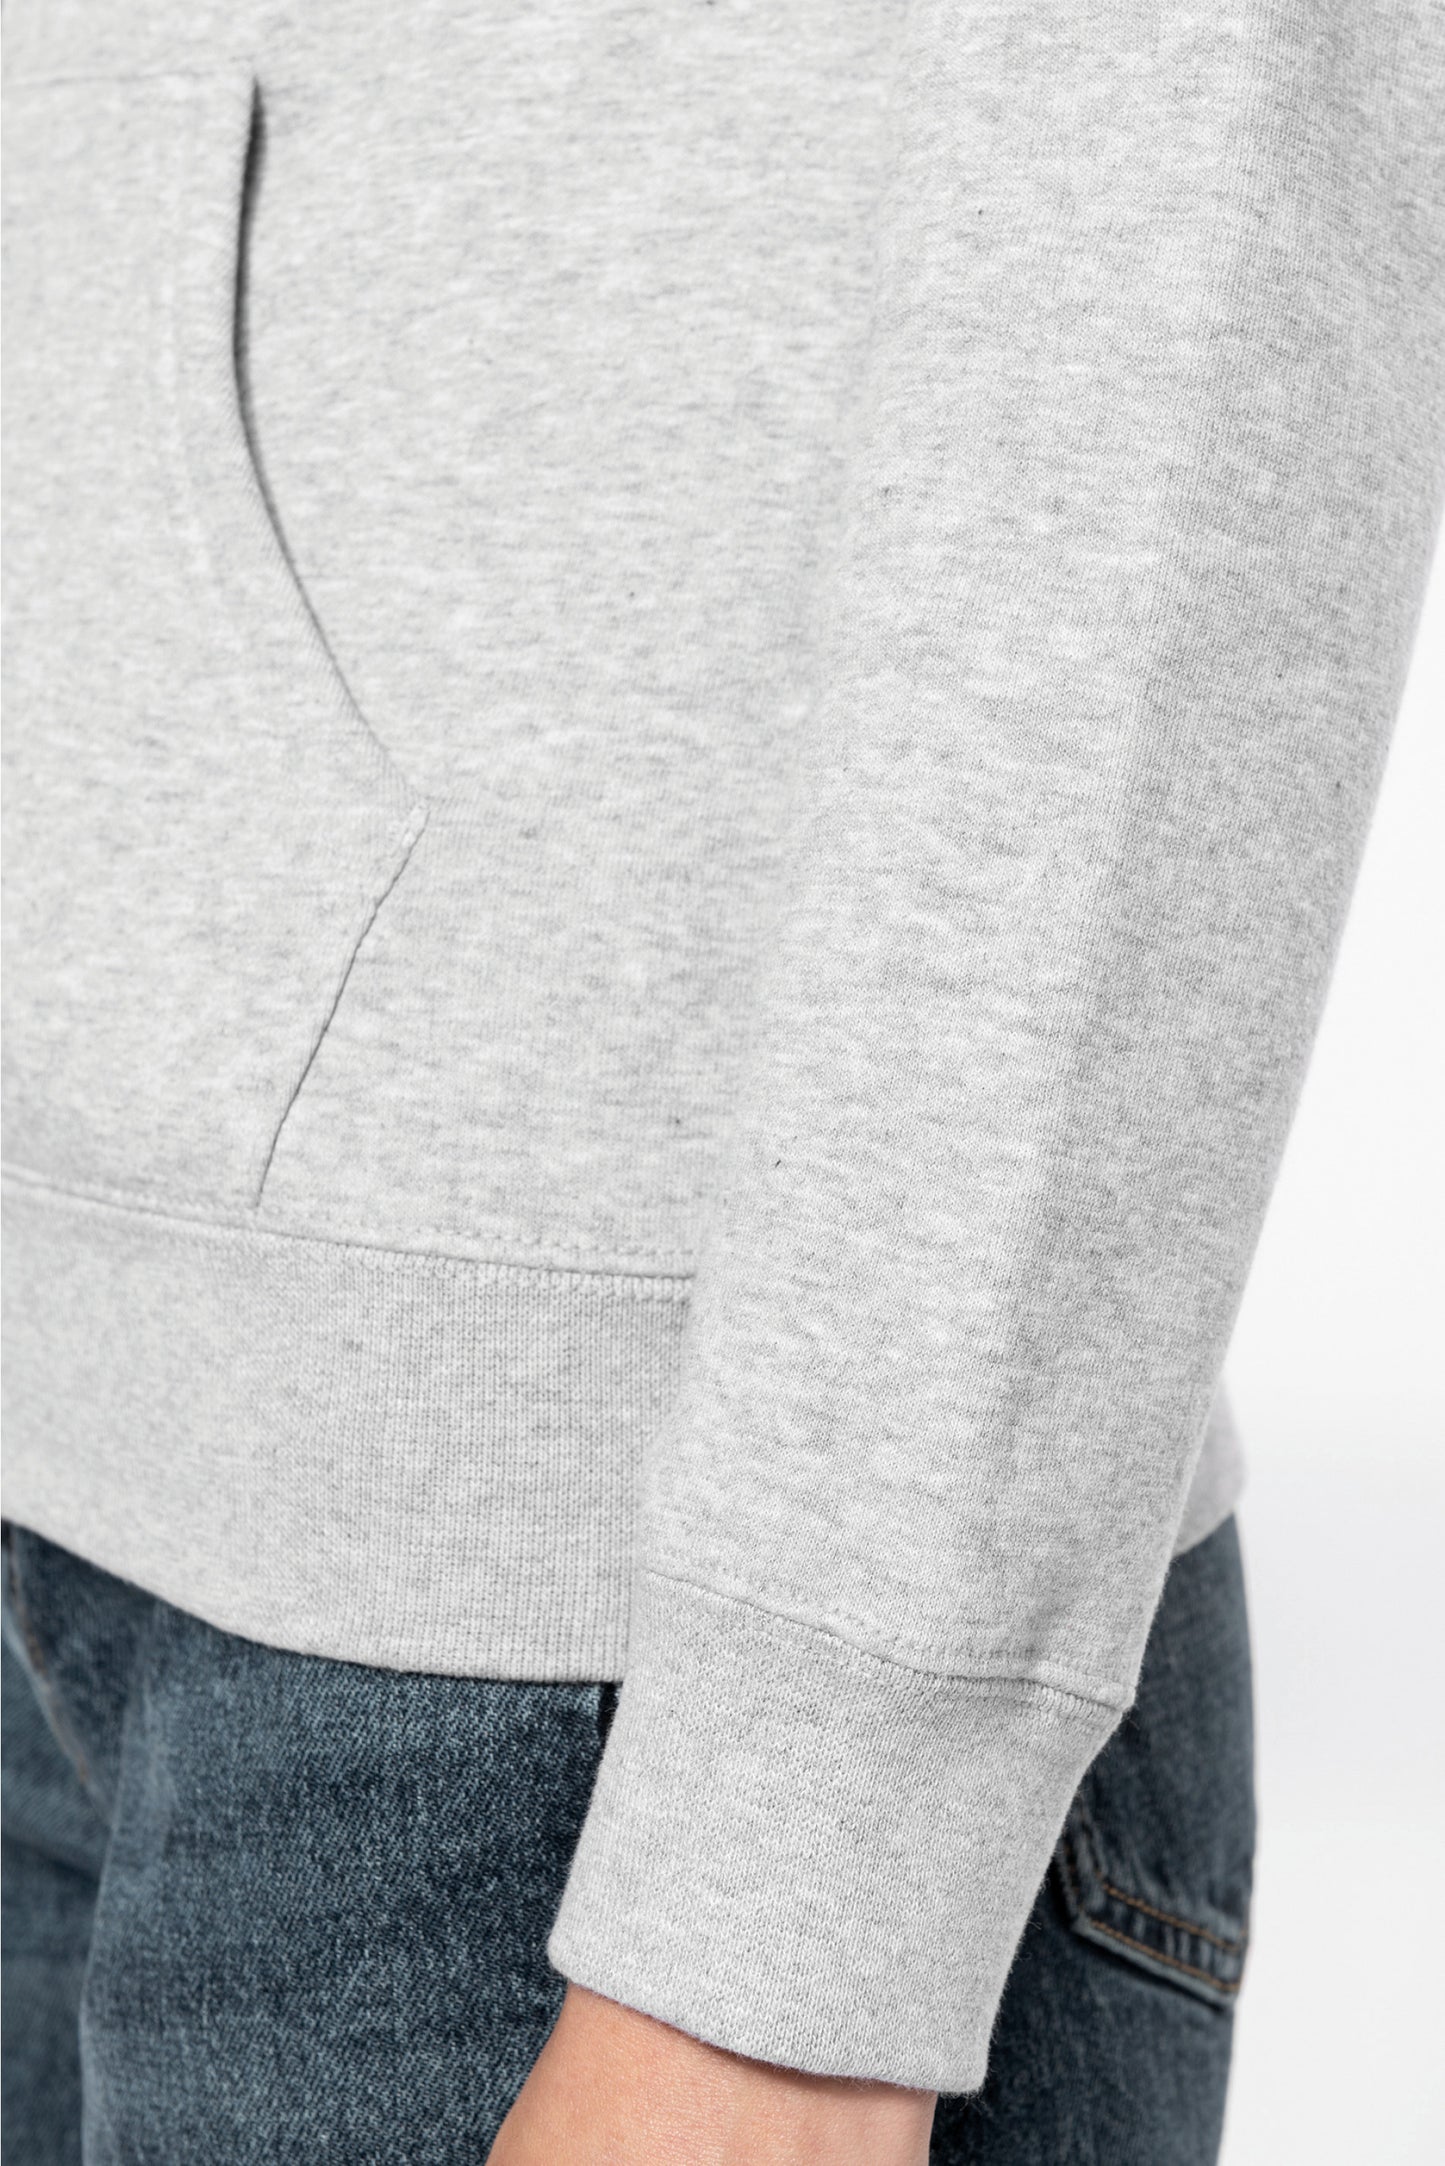 K467 - Sweat-shirt zippé capuche contrastée femme